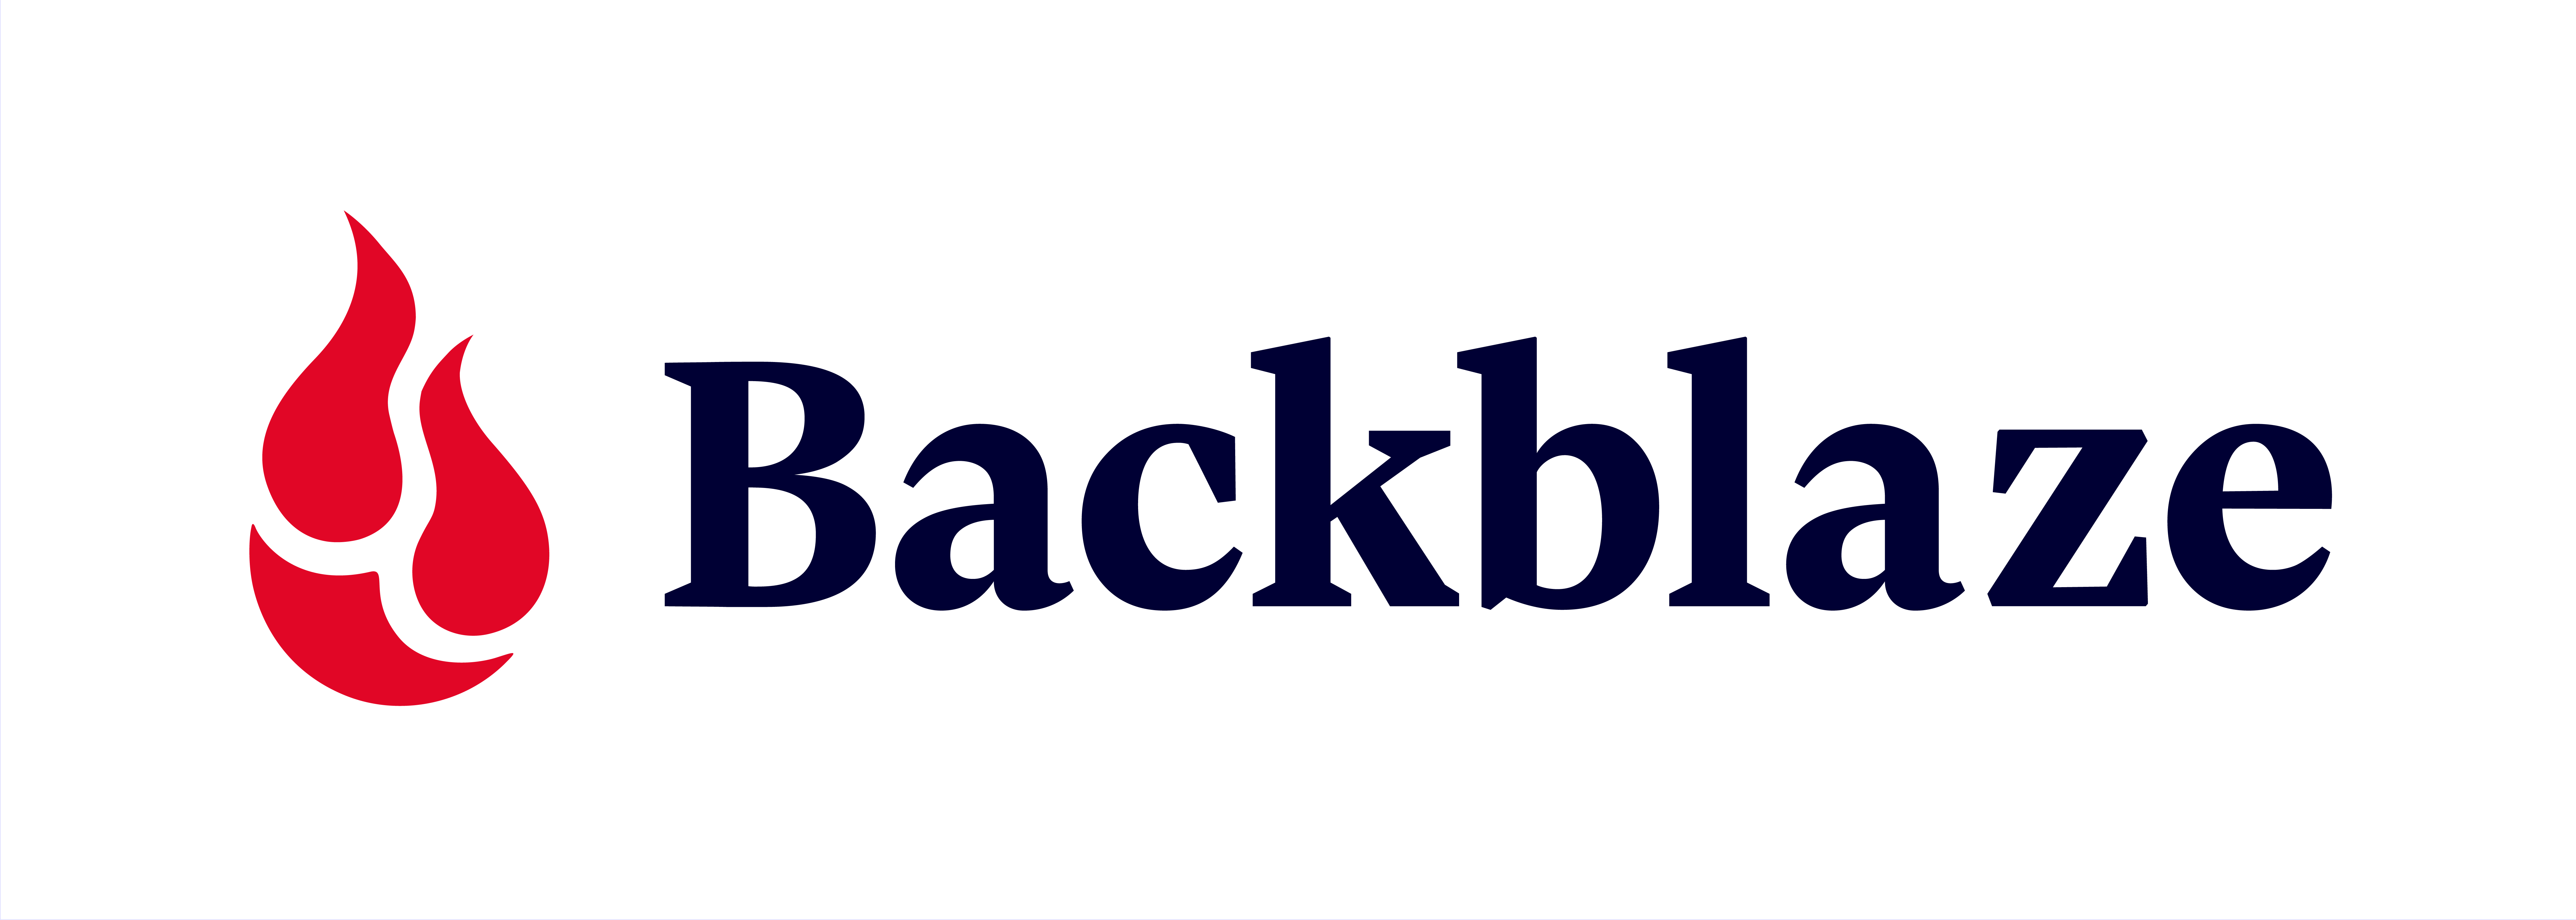 Backblaze — рішення для надійного резервного копіювання для приватних осіб та робочих команд